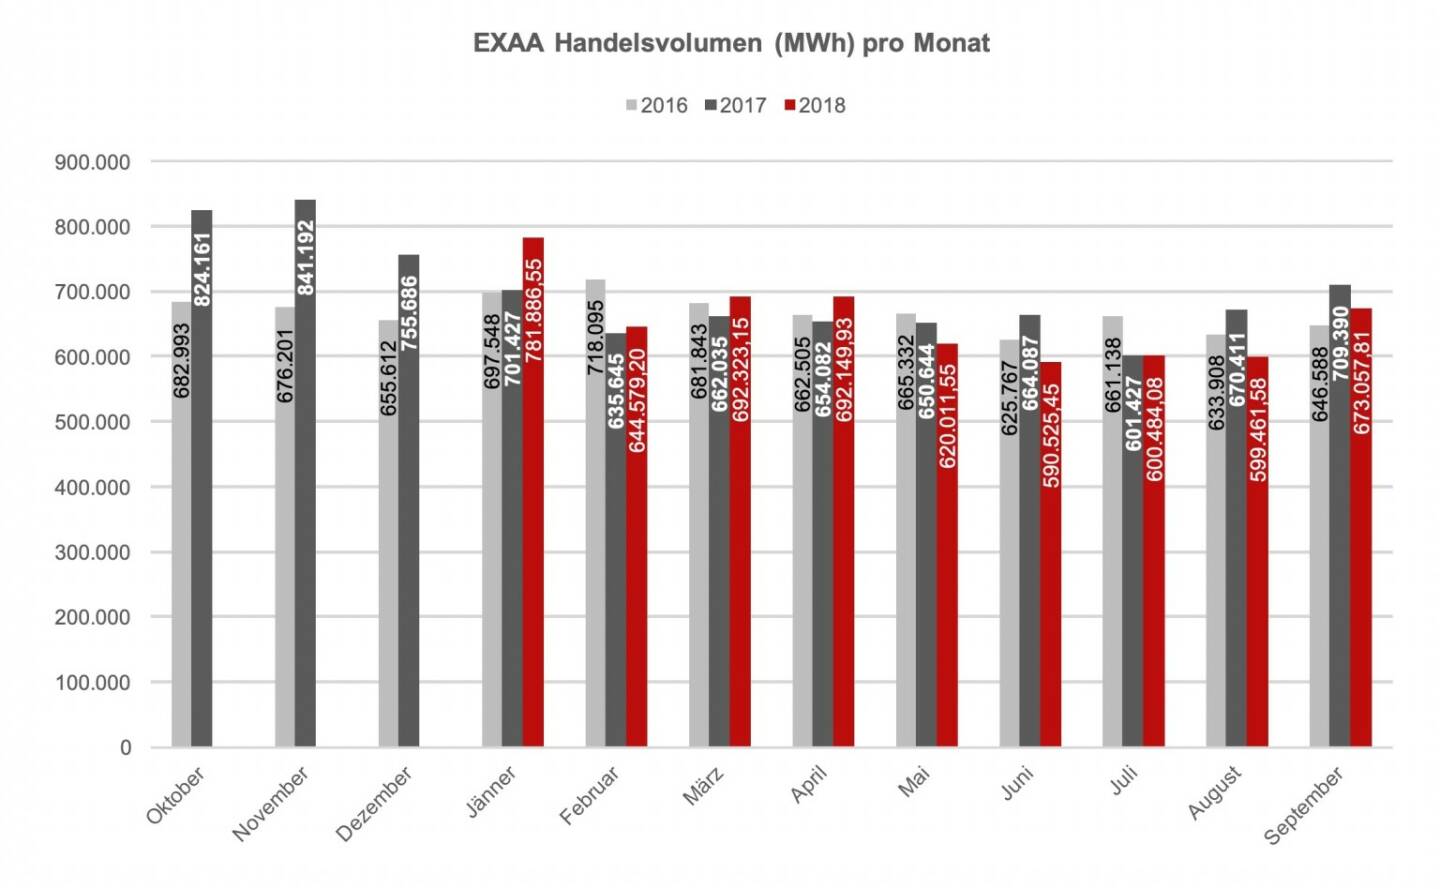 EXAA Handelsvolumen (MWh) pro Monat September 2018